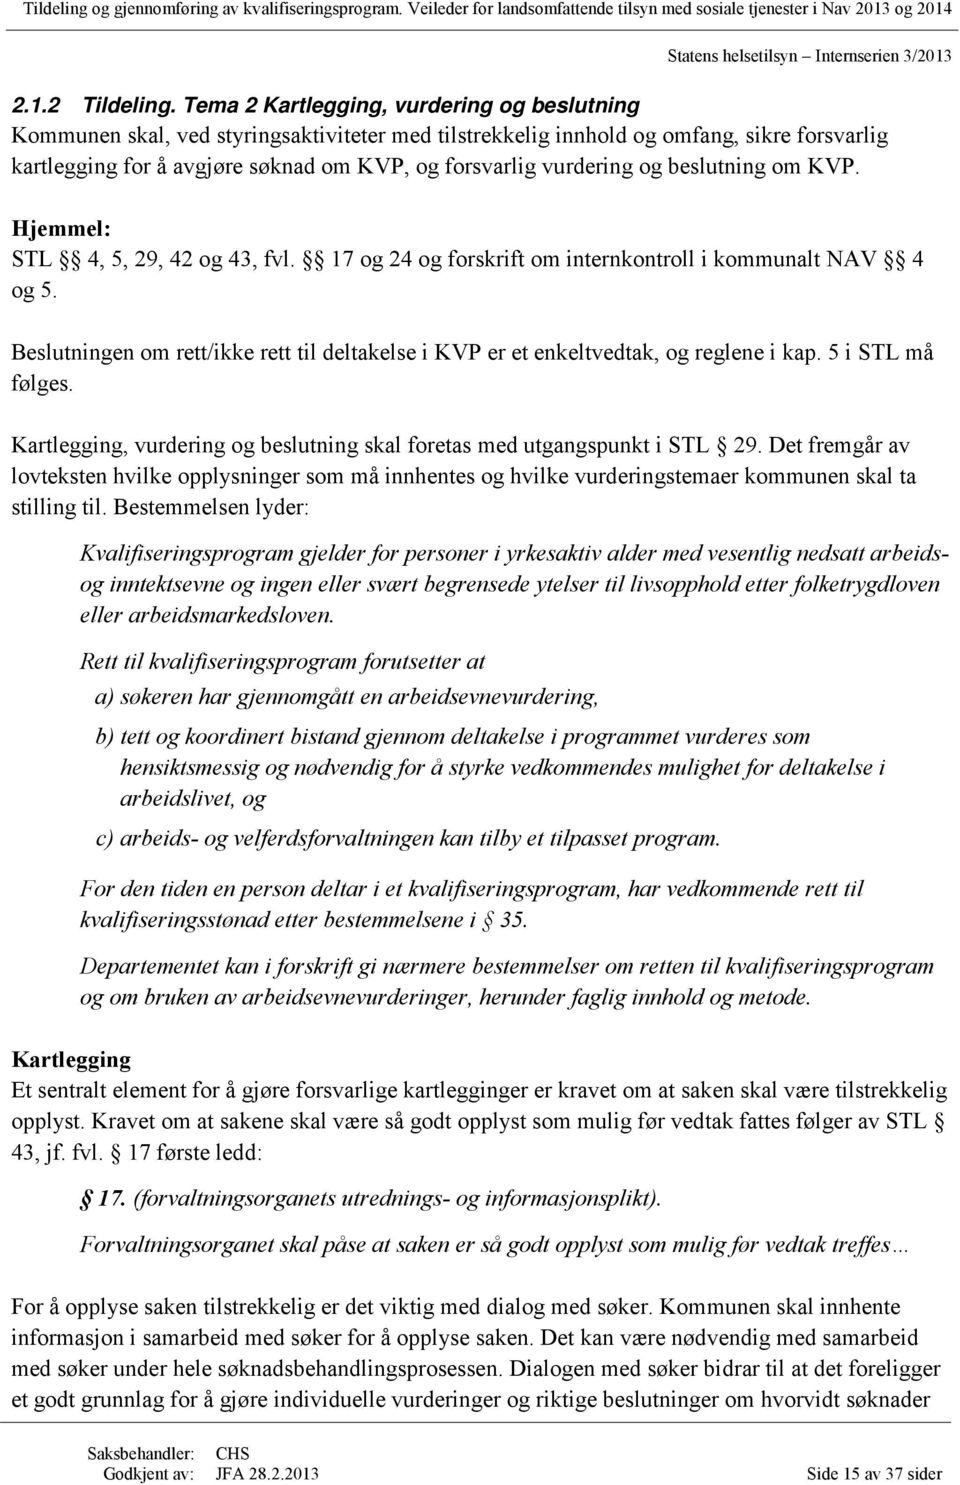 vurdering og beslutning om KVP. Hjemmel: STL 4, 5, 29, 42 og 43, fvl. 17 og 24 og forskrift om internkontroll i kommunalt NAV 4 og 5.